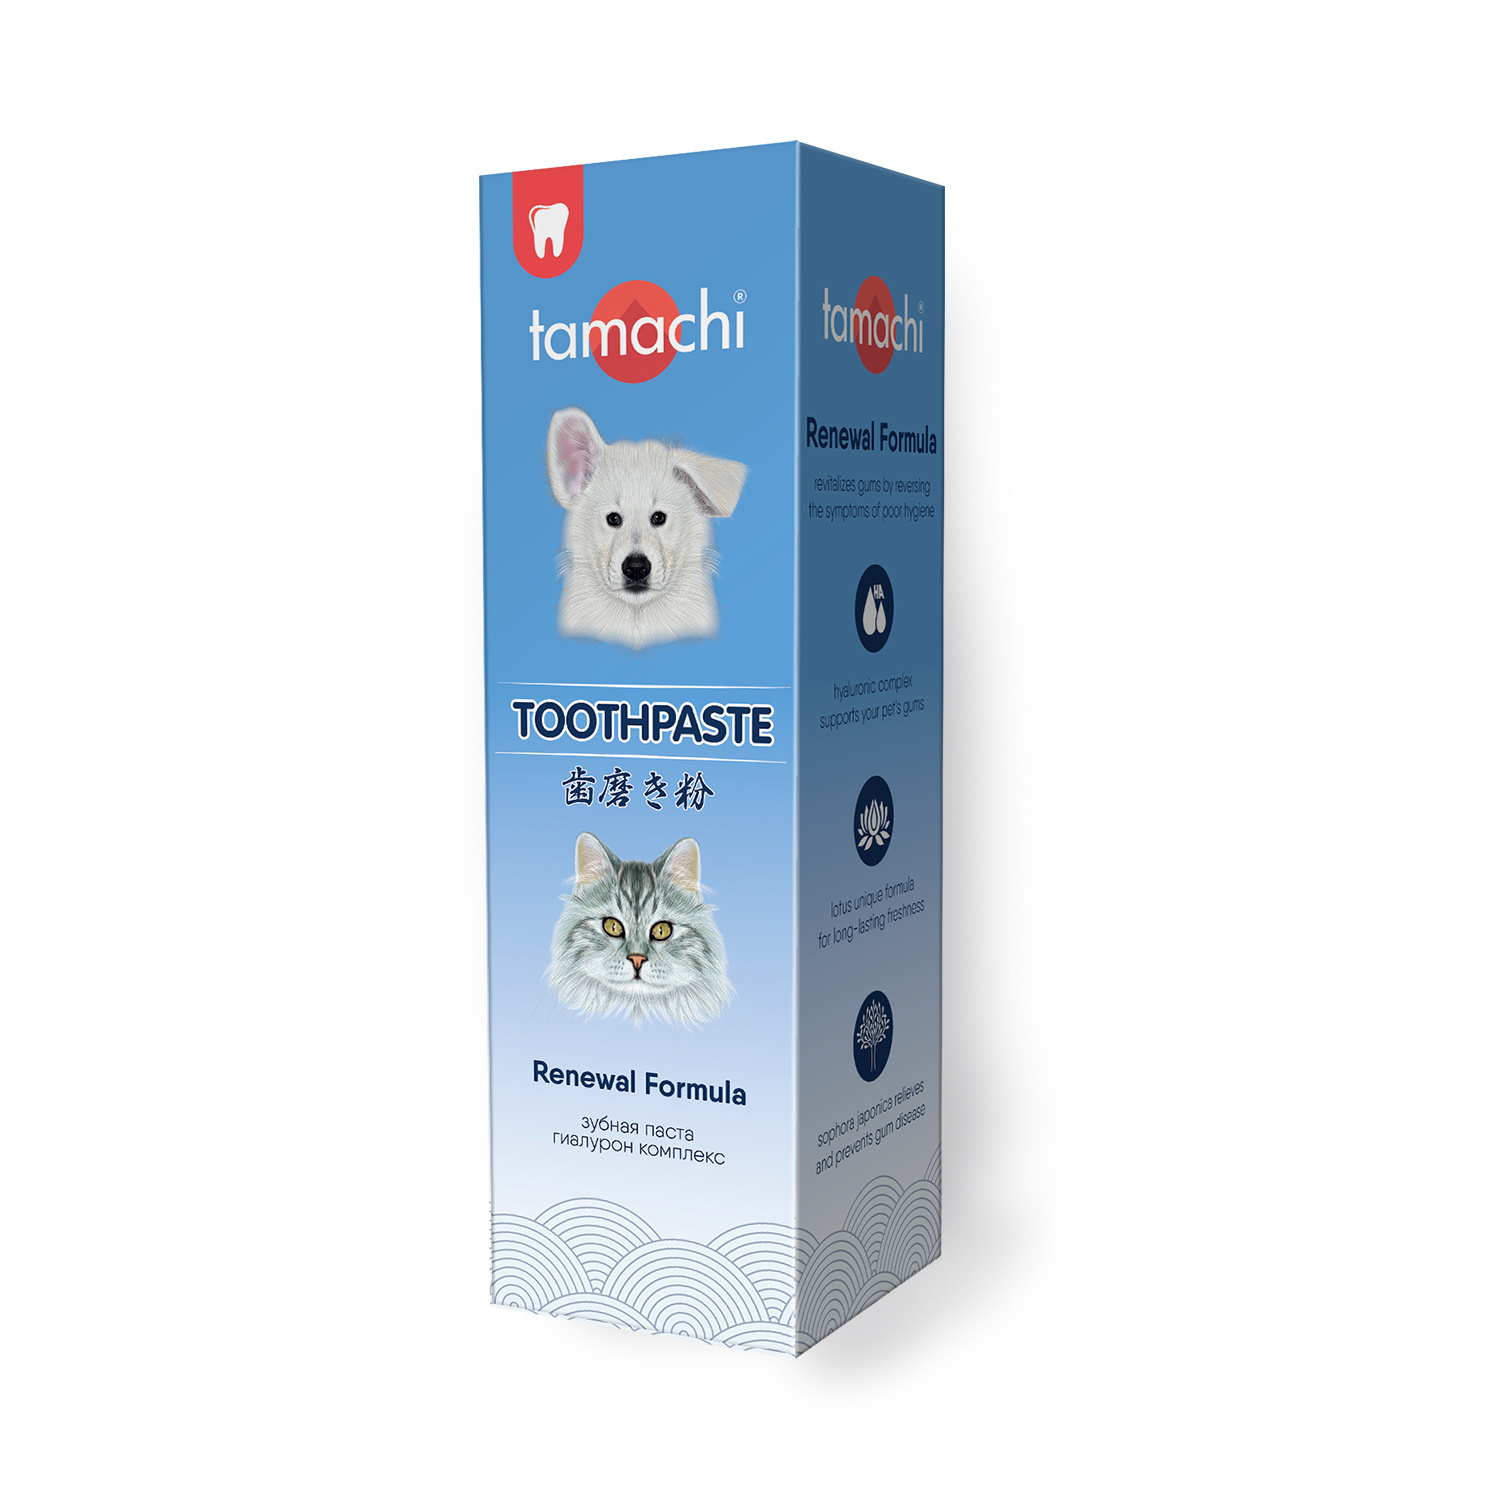 Tamachi зубная паста, 100 мл (130 г) Tamachi зубная паста, 100 мл (130 г) - фото 1